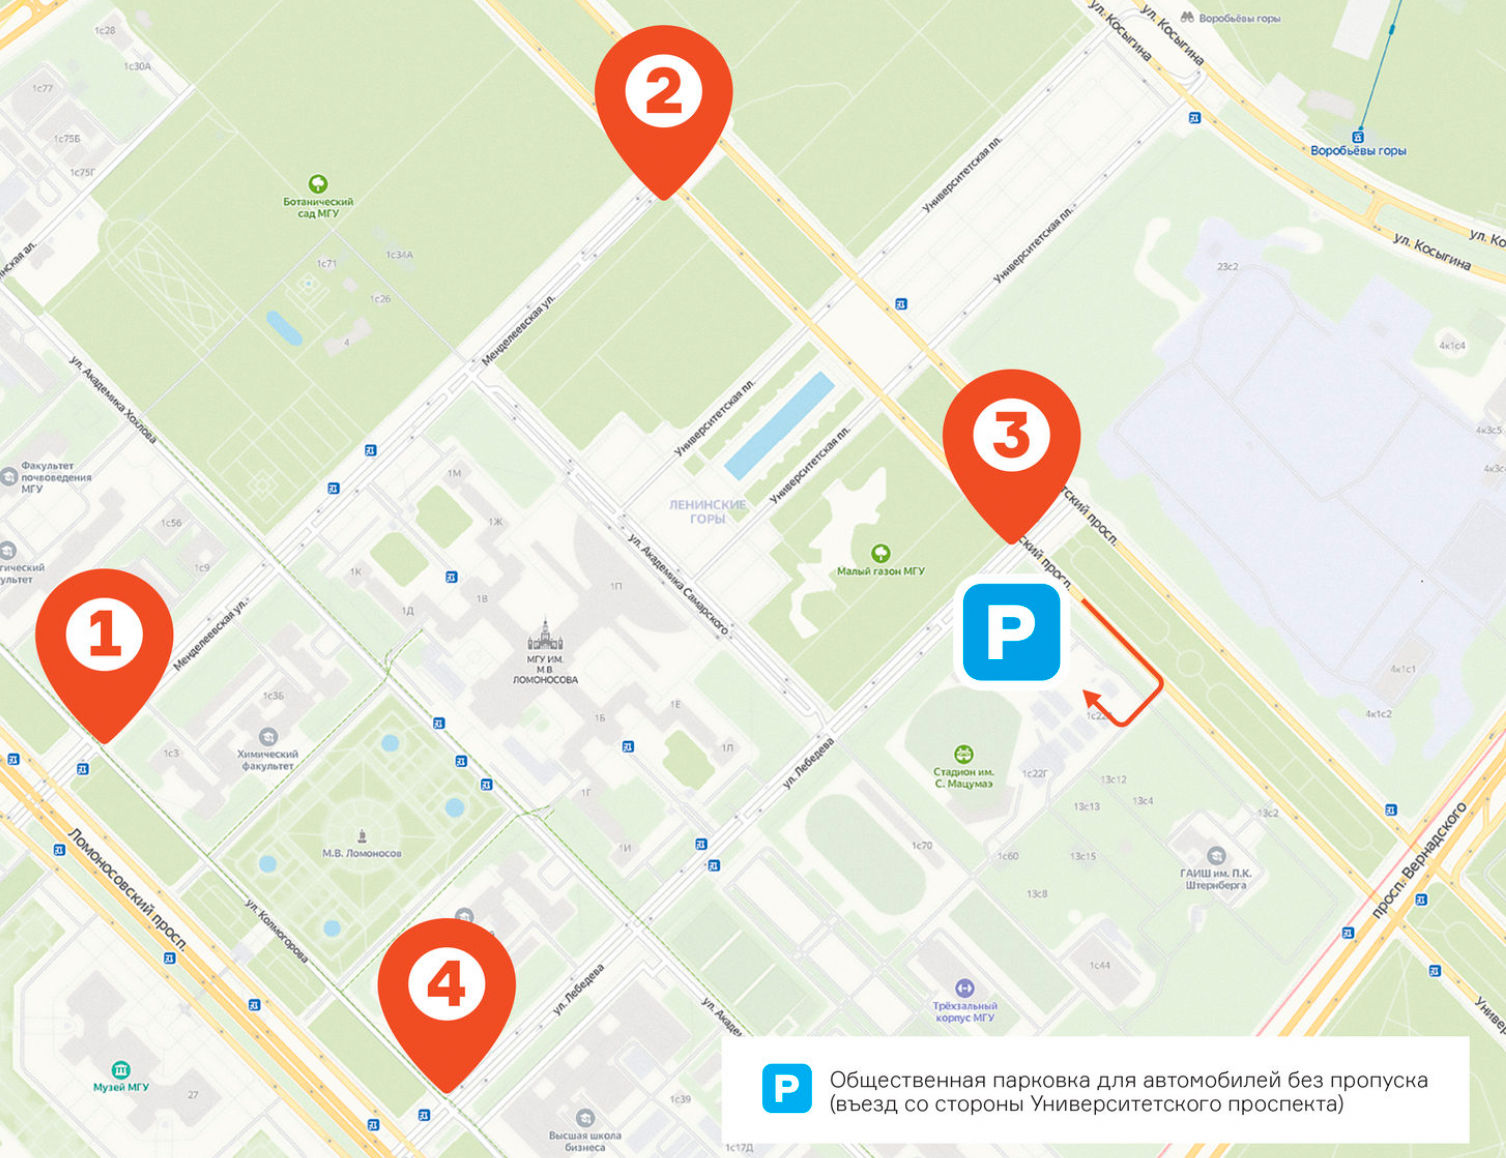 Новая схема организации дорожного движения в кампусе Московского университета